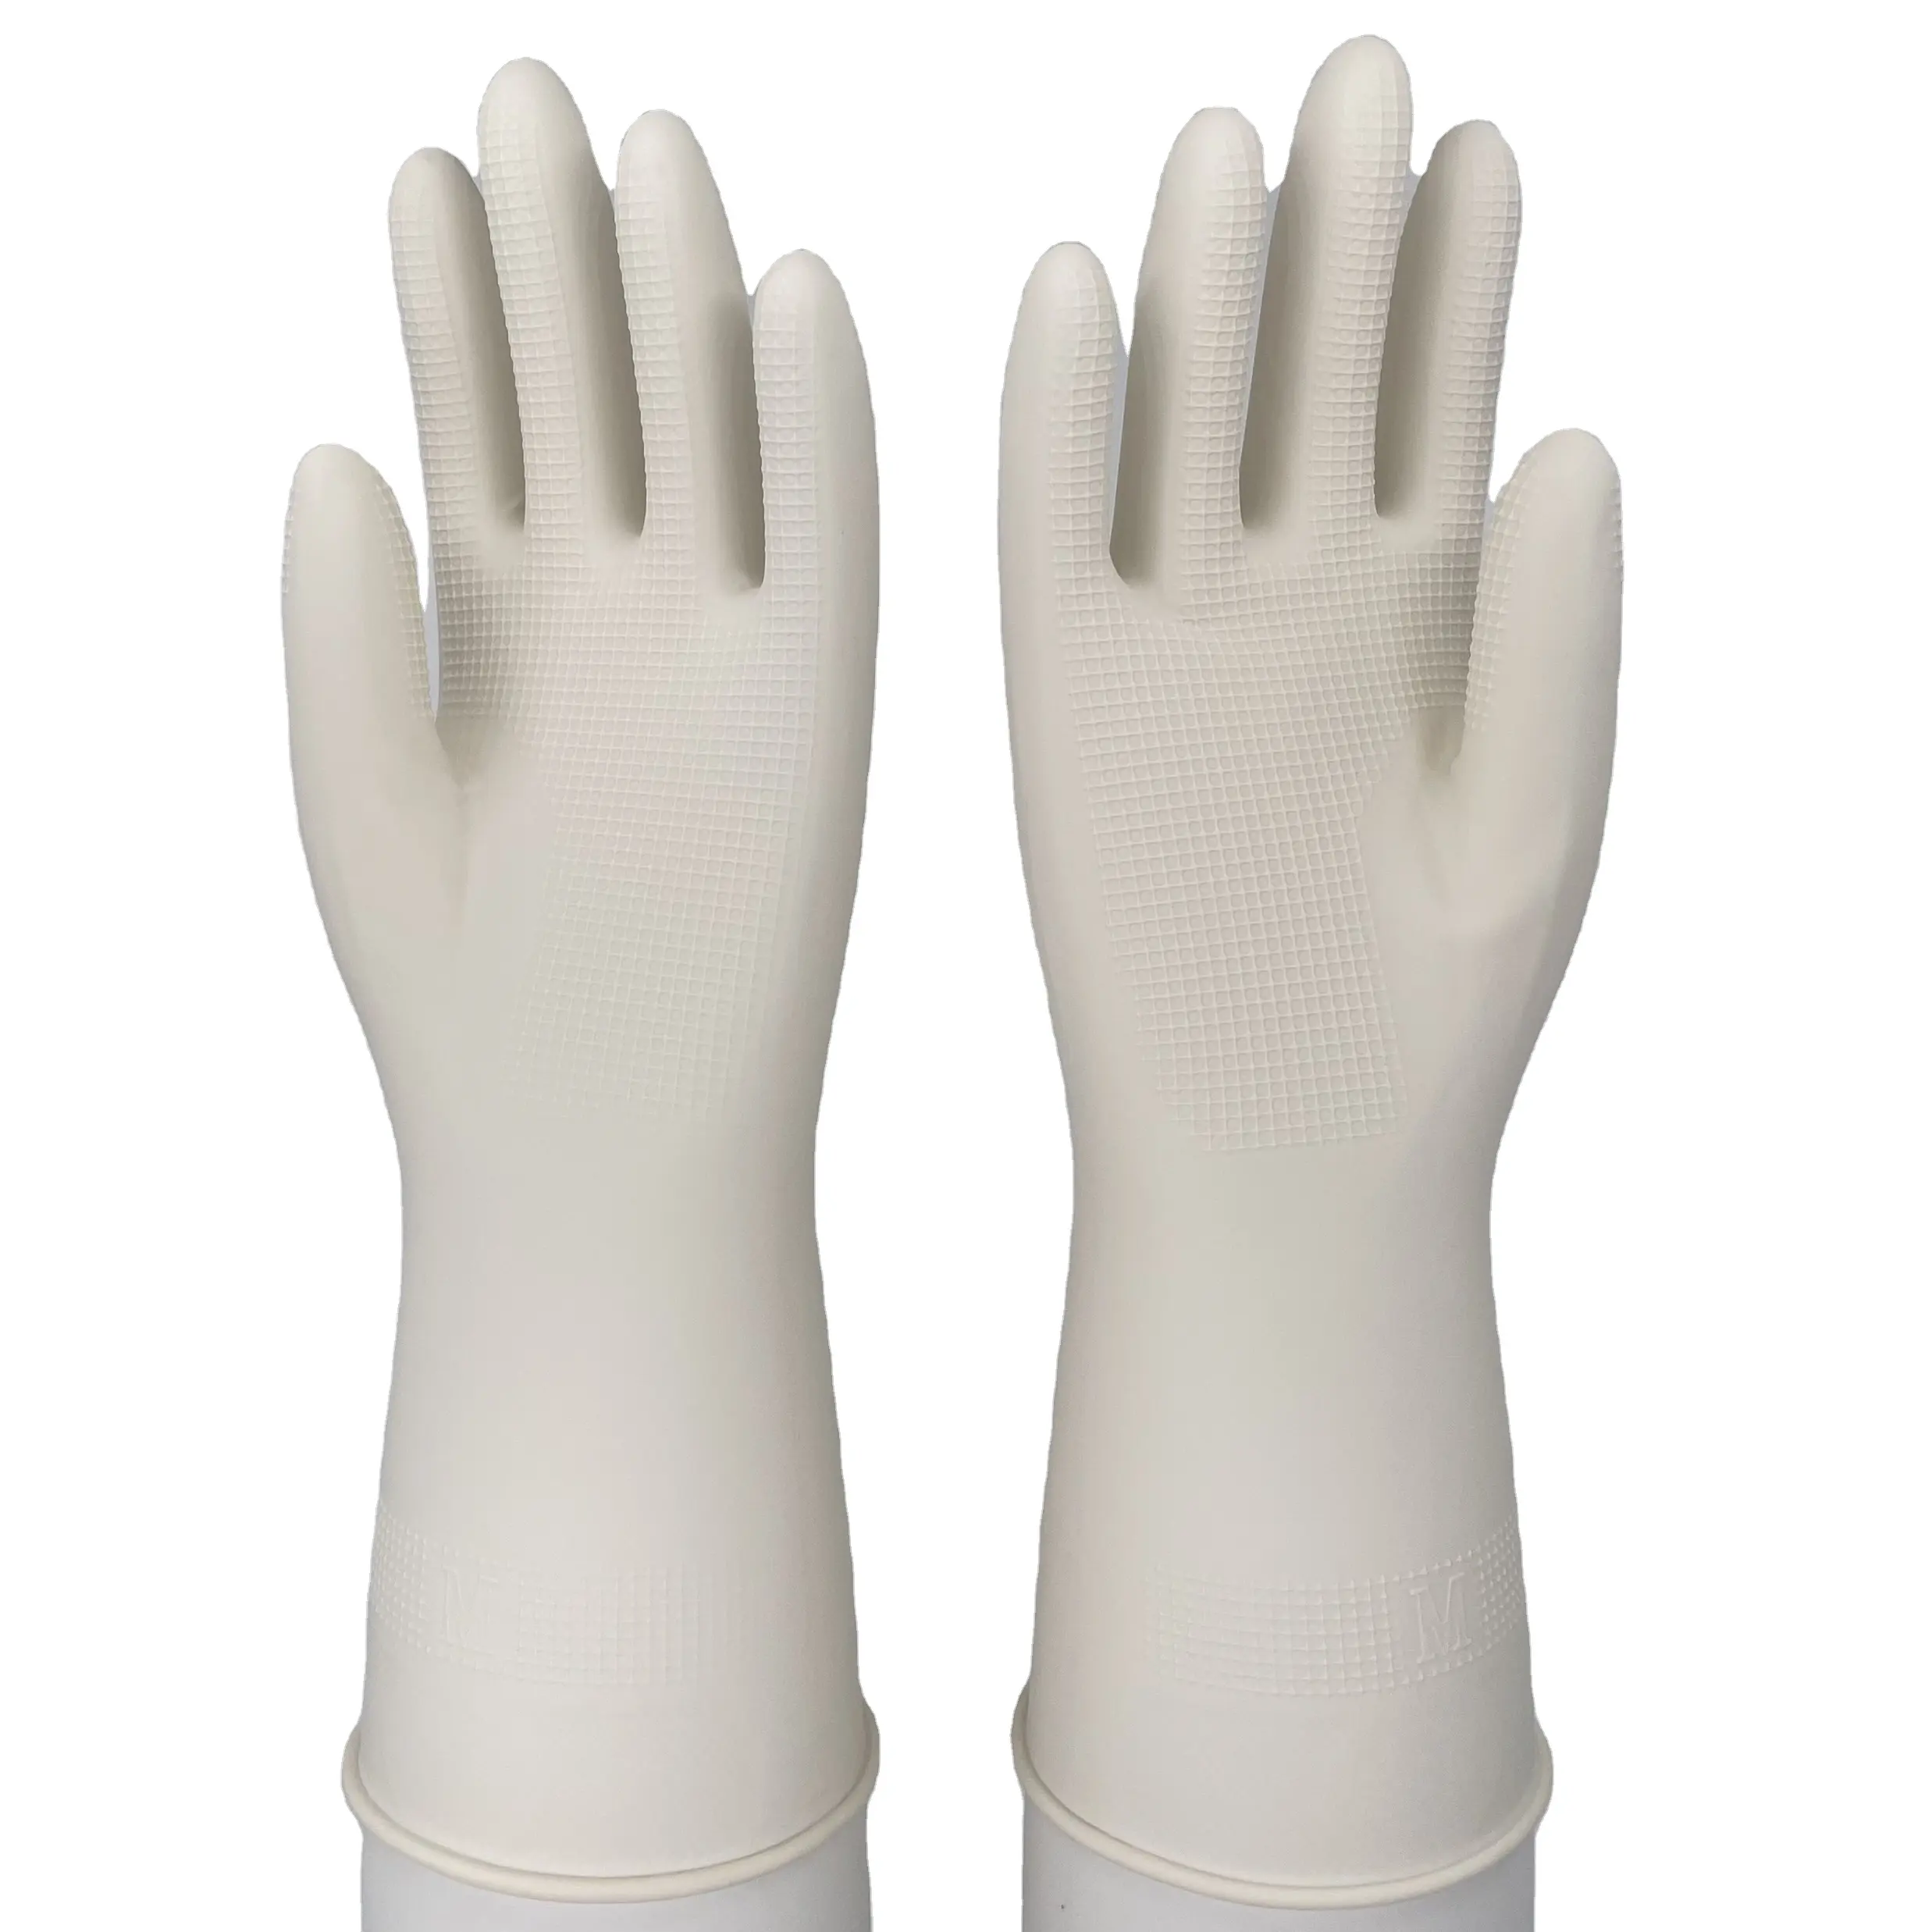 Couleur blanche longue manchette femmes type vaisselle réutilisable cuisine nettoyage caoutchouc latex travail ménage gants